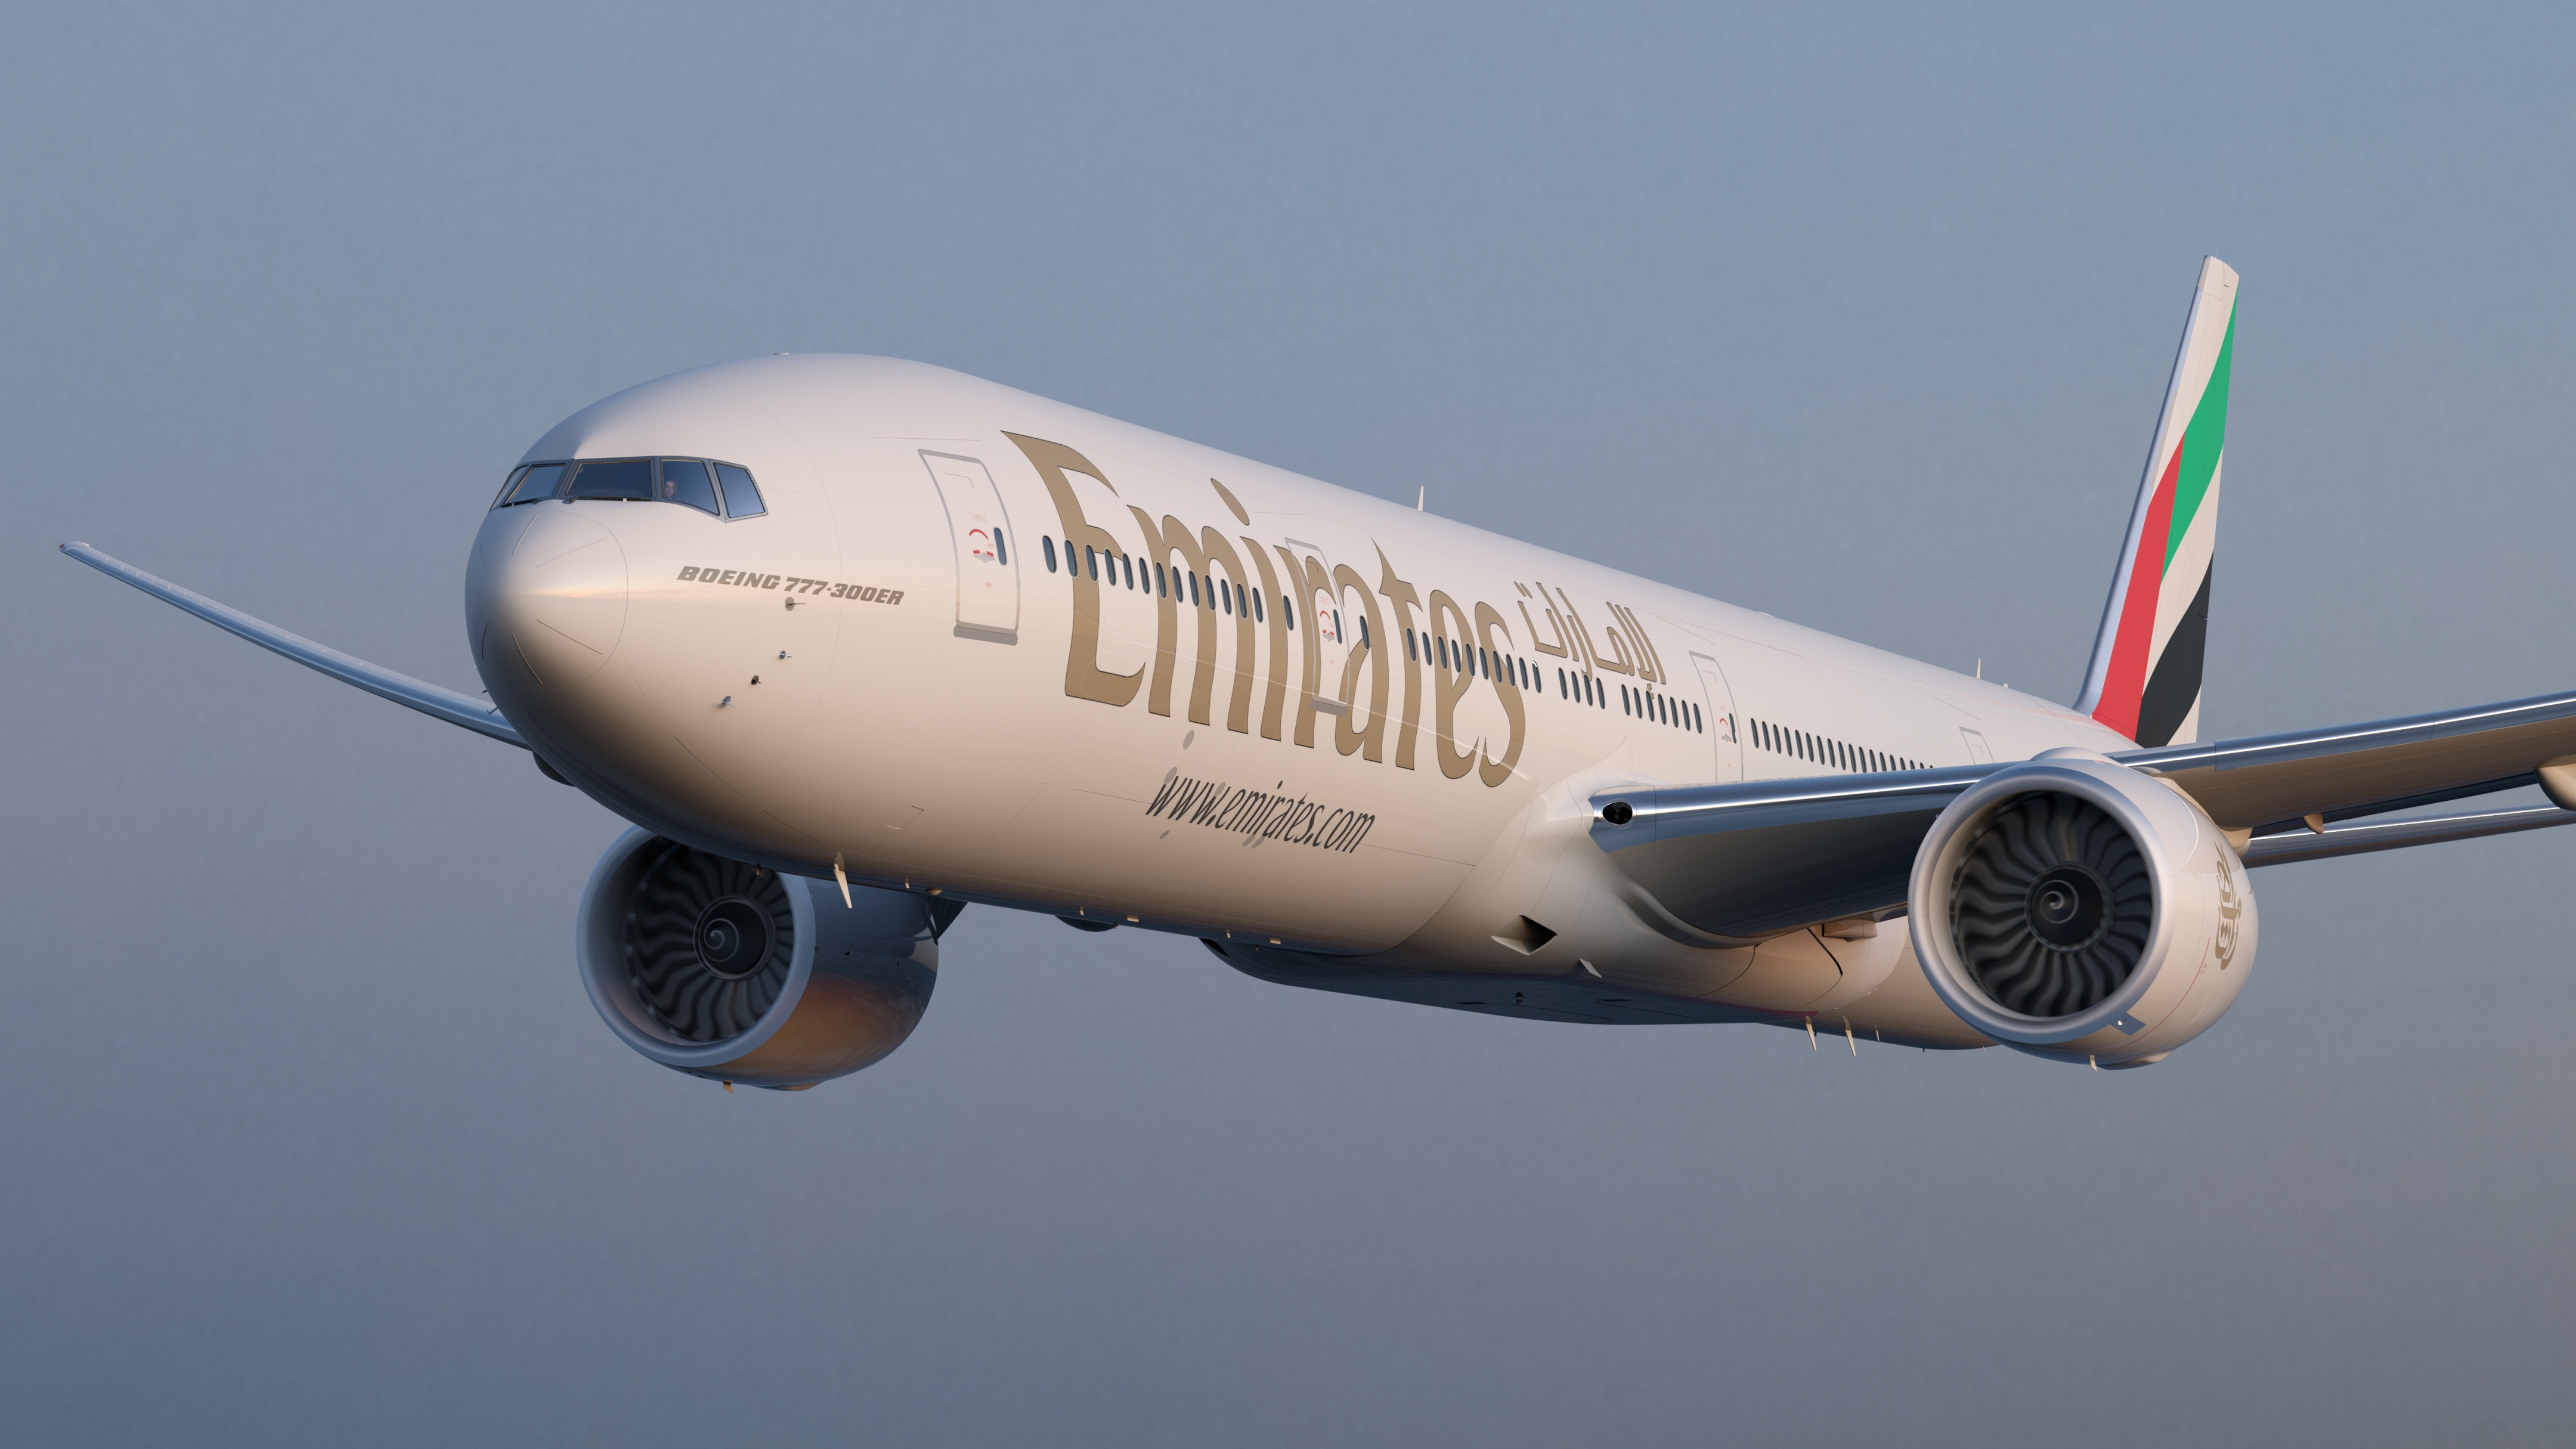 Trenitalia sigla accordo con Emirates per sinergia treno e aereo